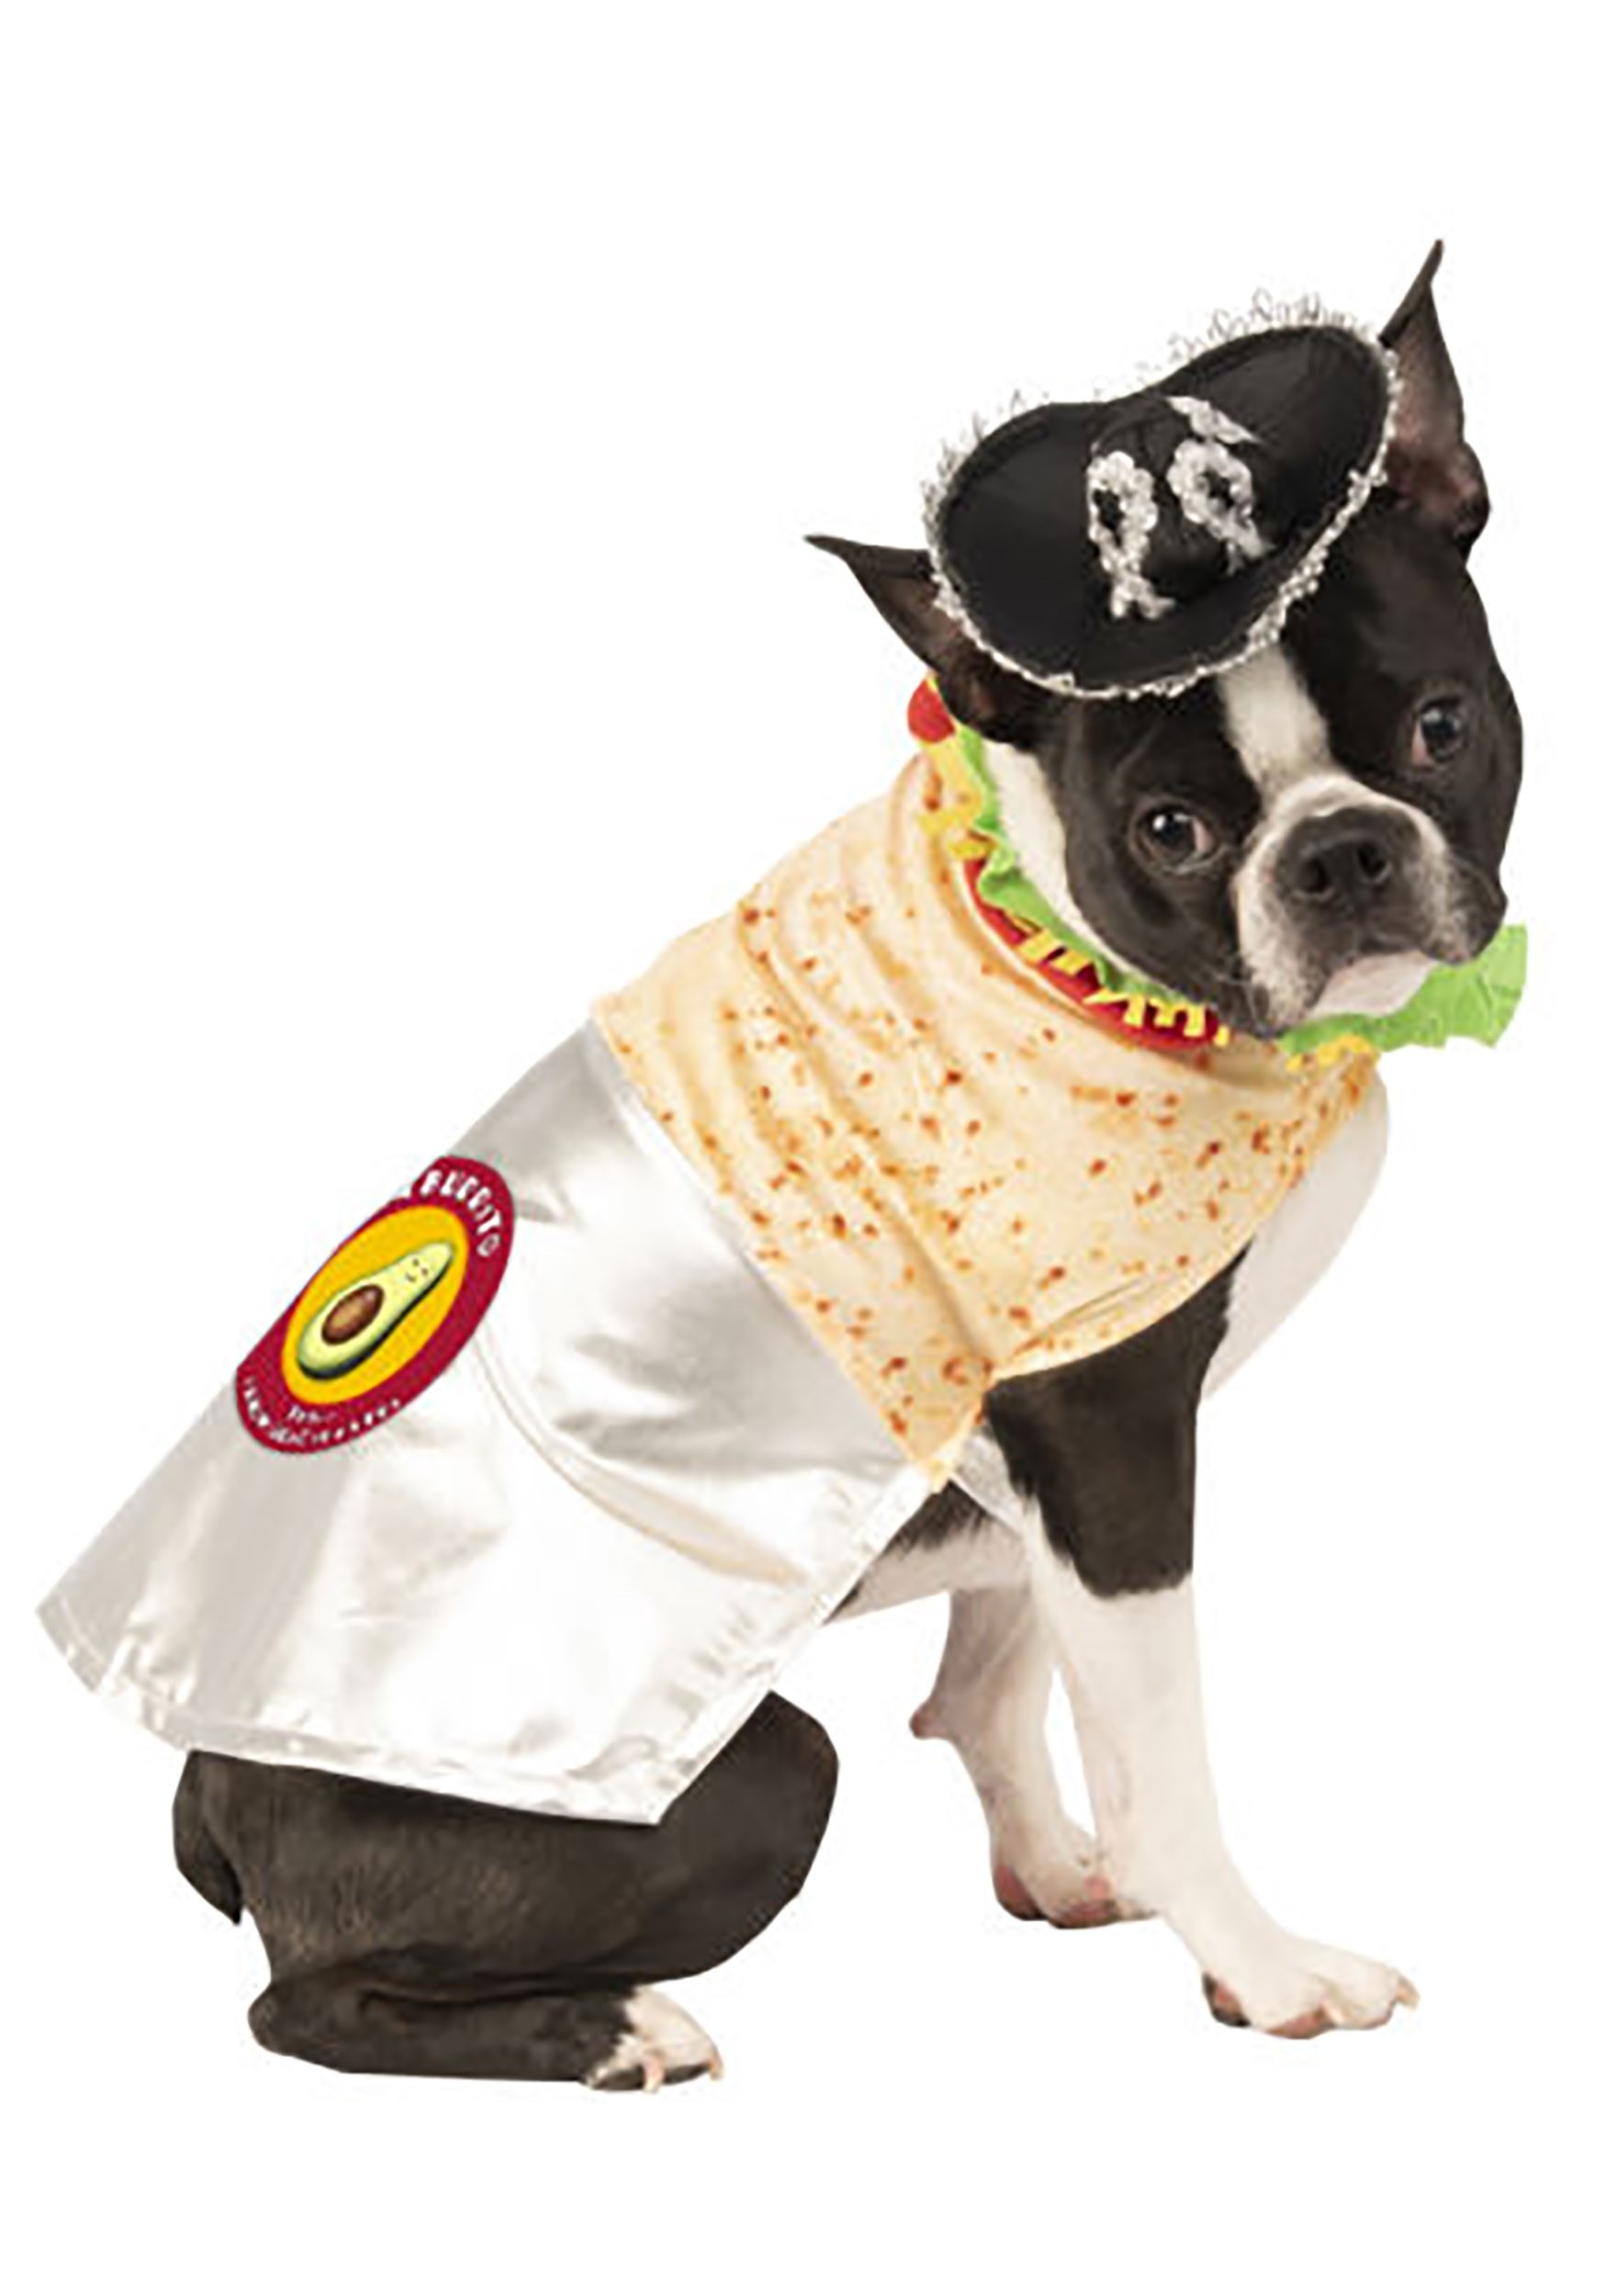 Delicious Burrito Costume for Dogs